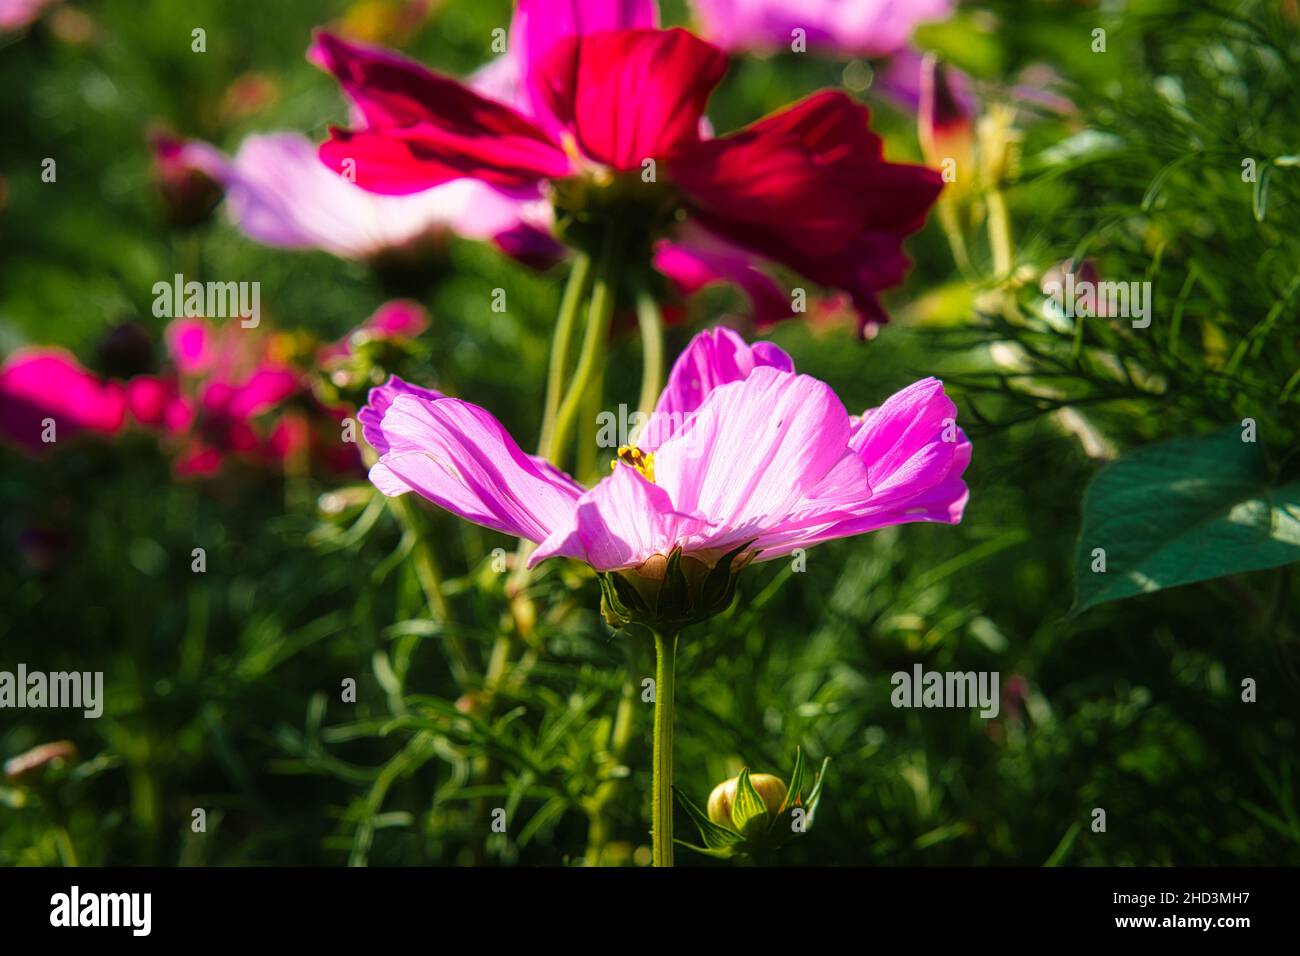 Blumenwiese mit verschiedenfarbigen Blüten. Frühling und Sommer Blumenwiese. Romantischer Anblick Stockfoto